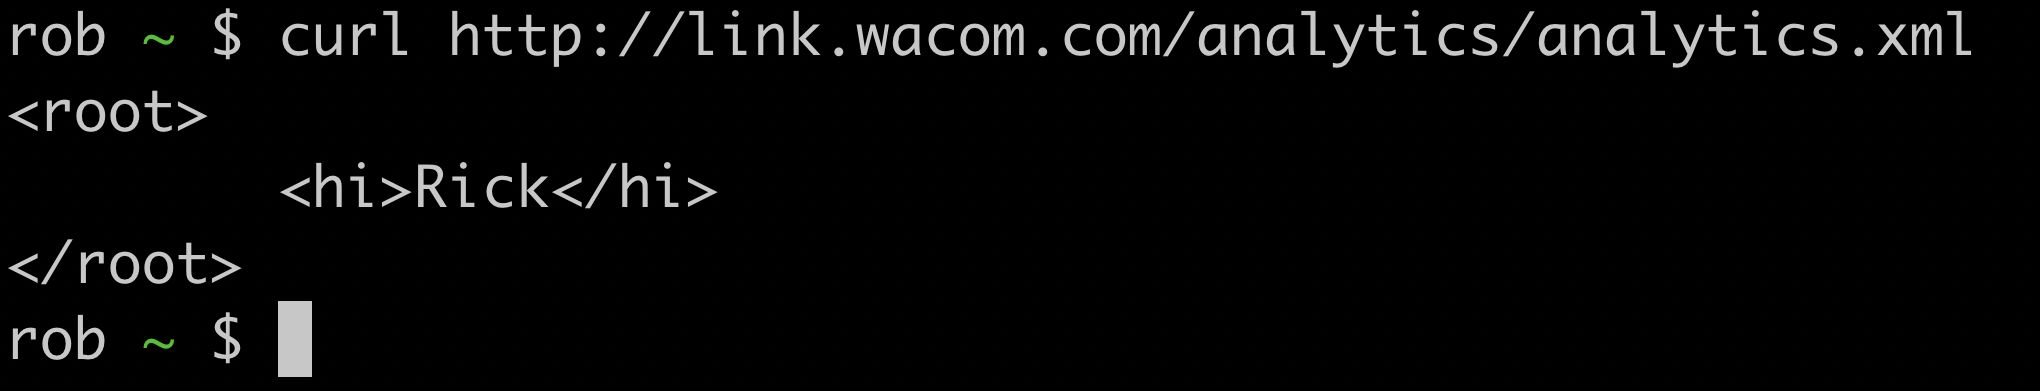 wacom-hi-rick.png